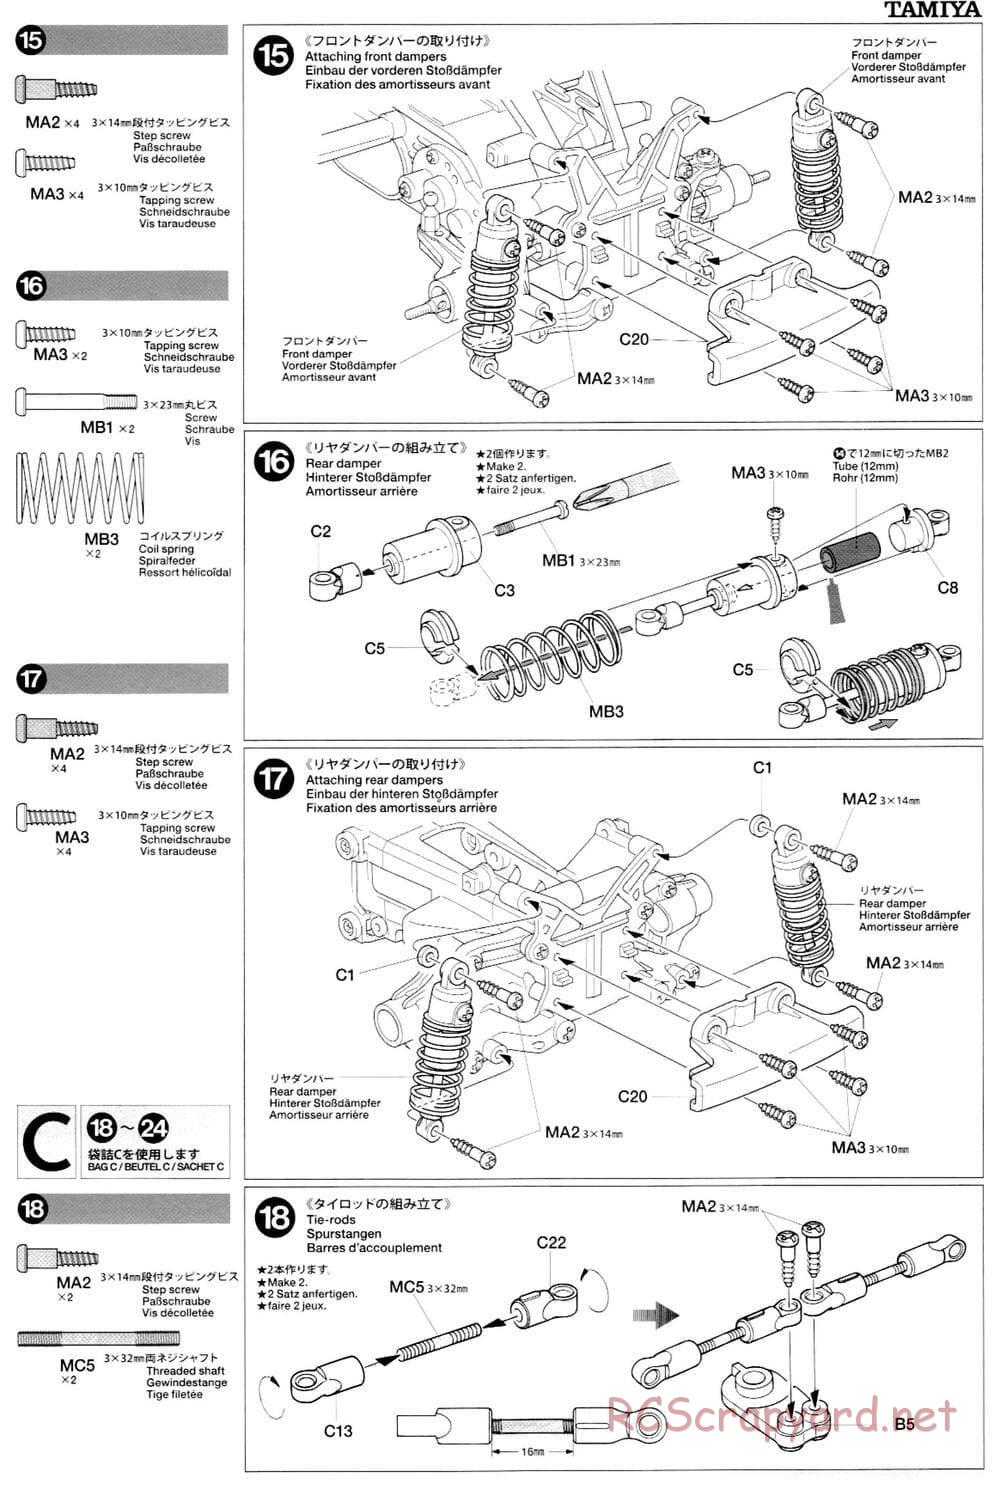 Tamiya - M-03L Chassis - Manual - Page 9